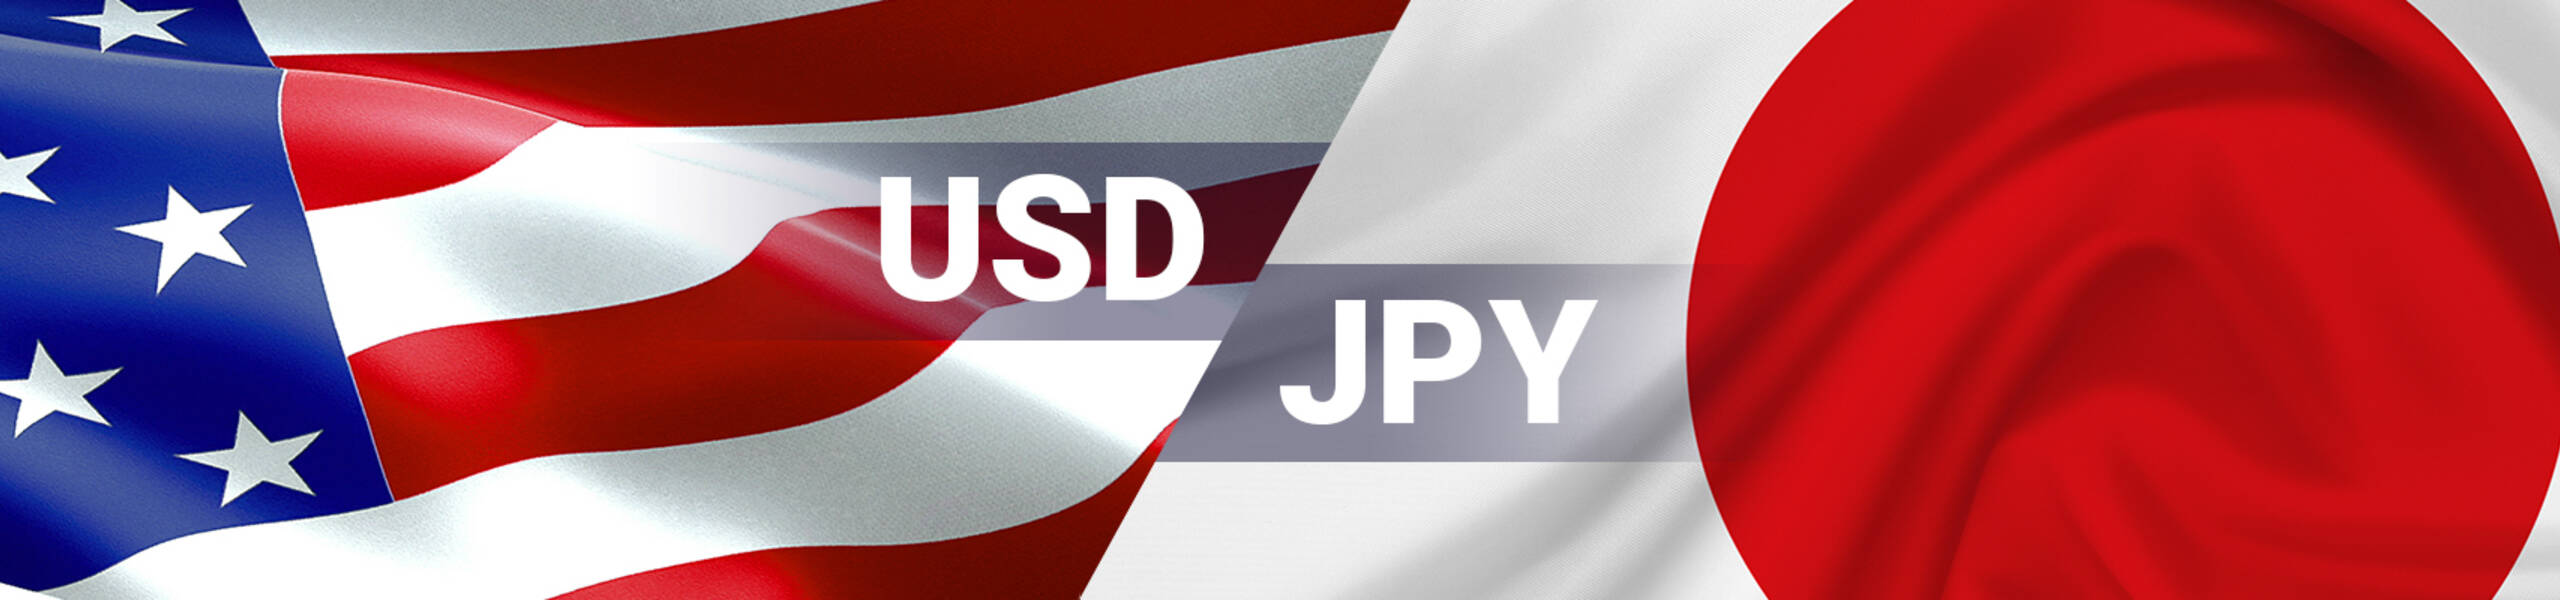 USD/JPY broke resistance zone